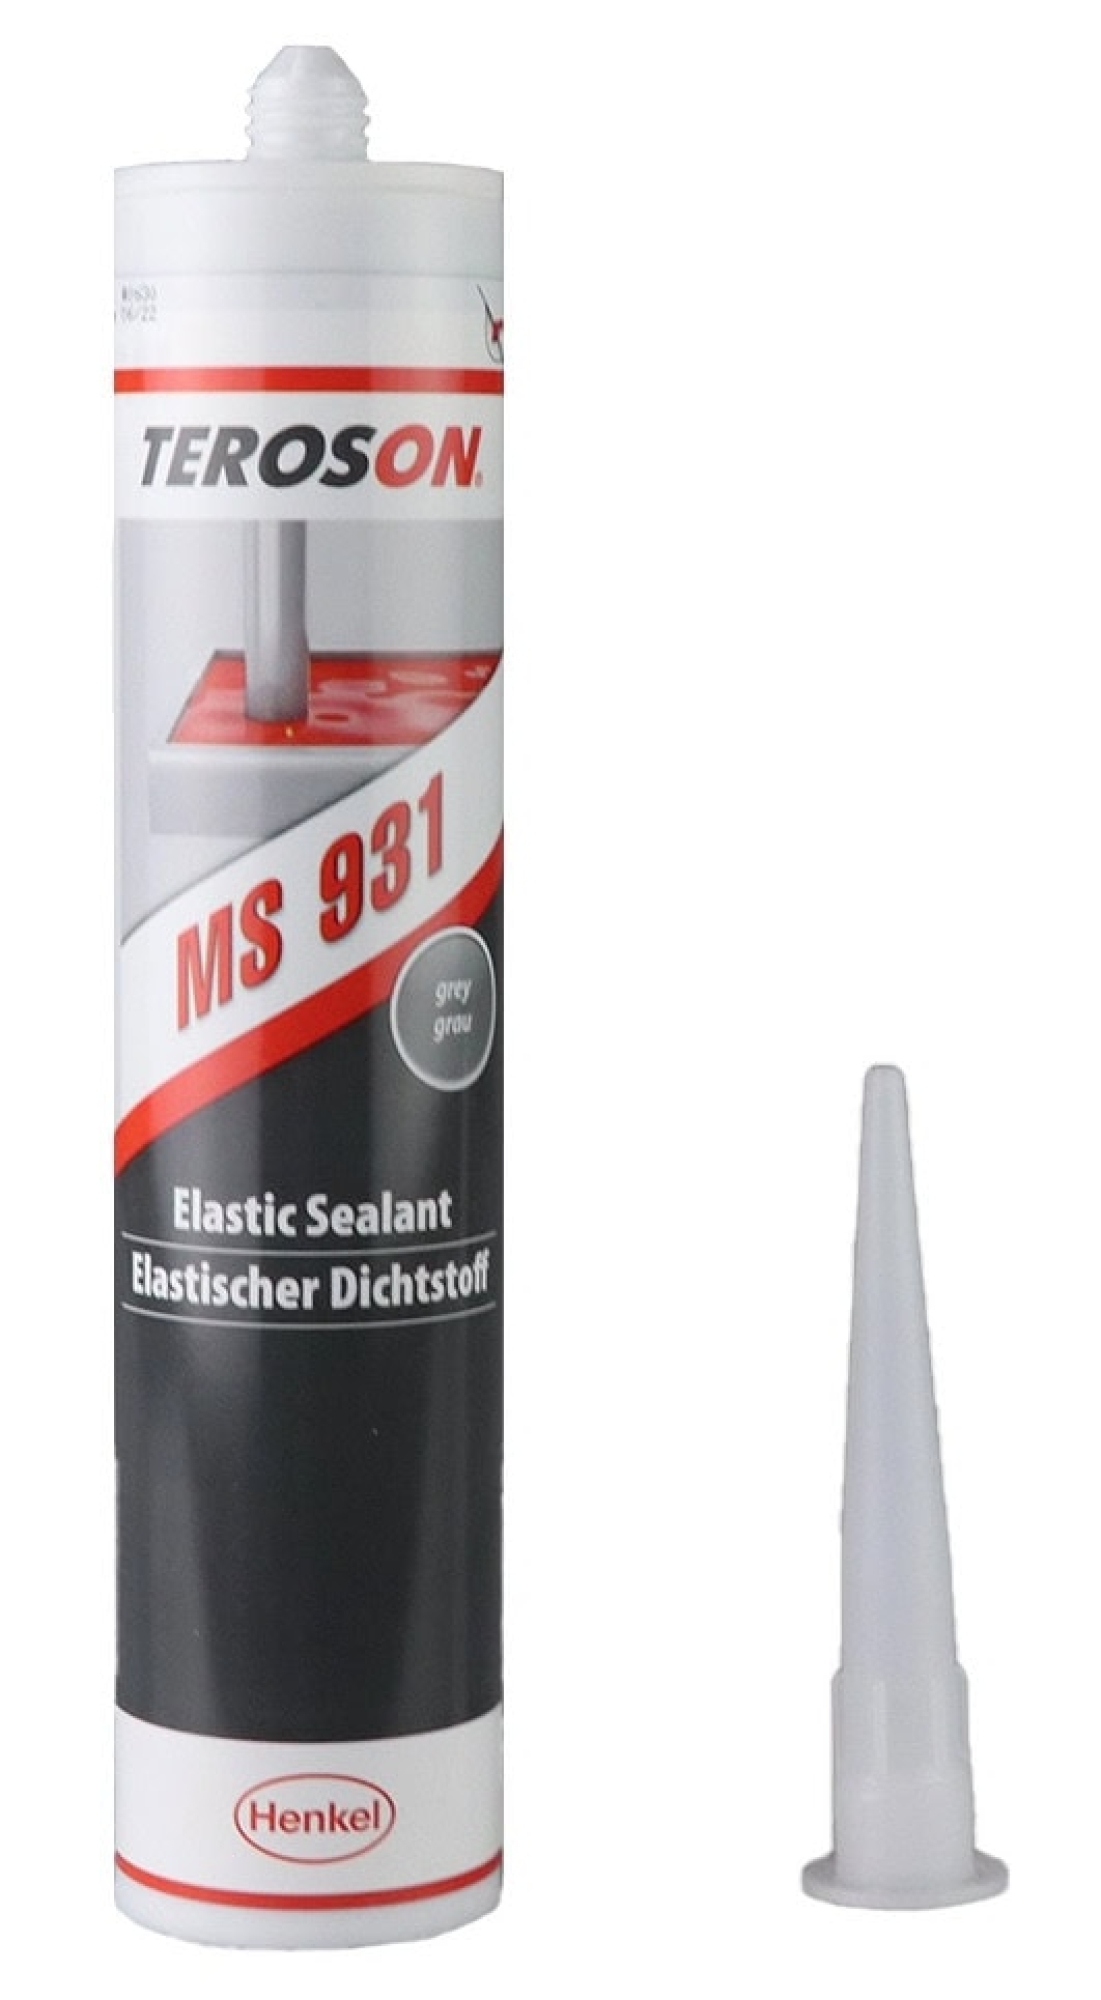 Henkel™ Teroson® Silanmodifizierter Polymer Kleb-und Dichstoff MS 931, 290 ml, Grau, selbstnivellierend, 1K, 2469464, Für Sensorische Analysen (DIN 10955)